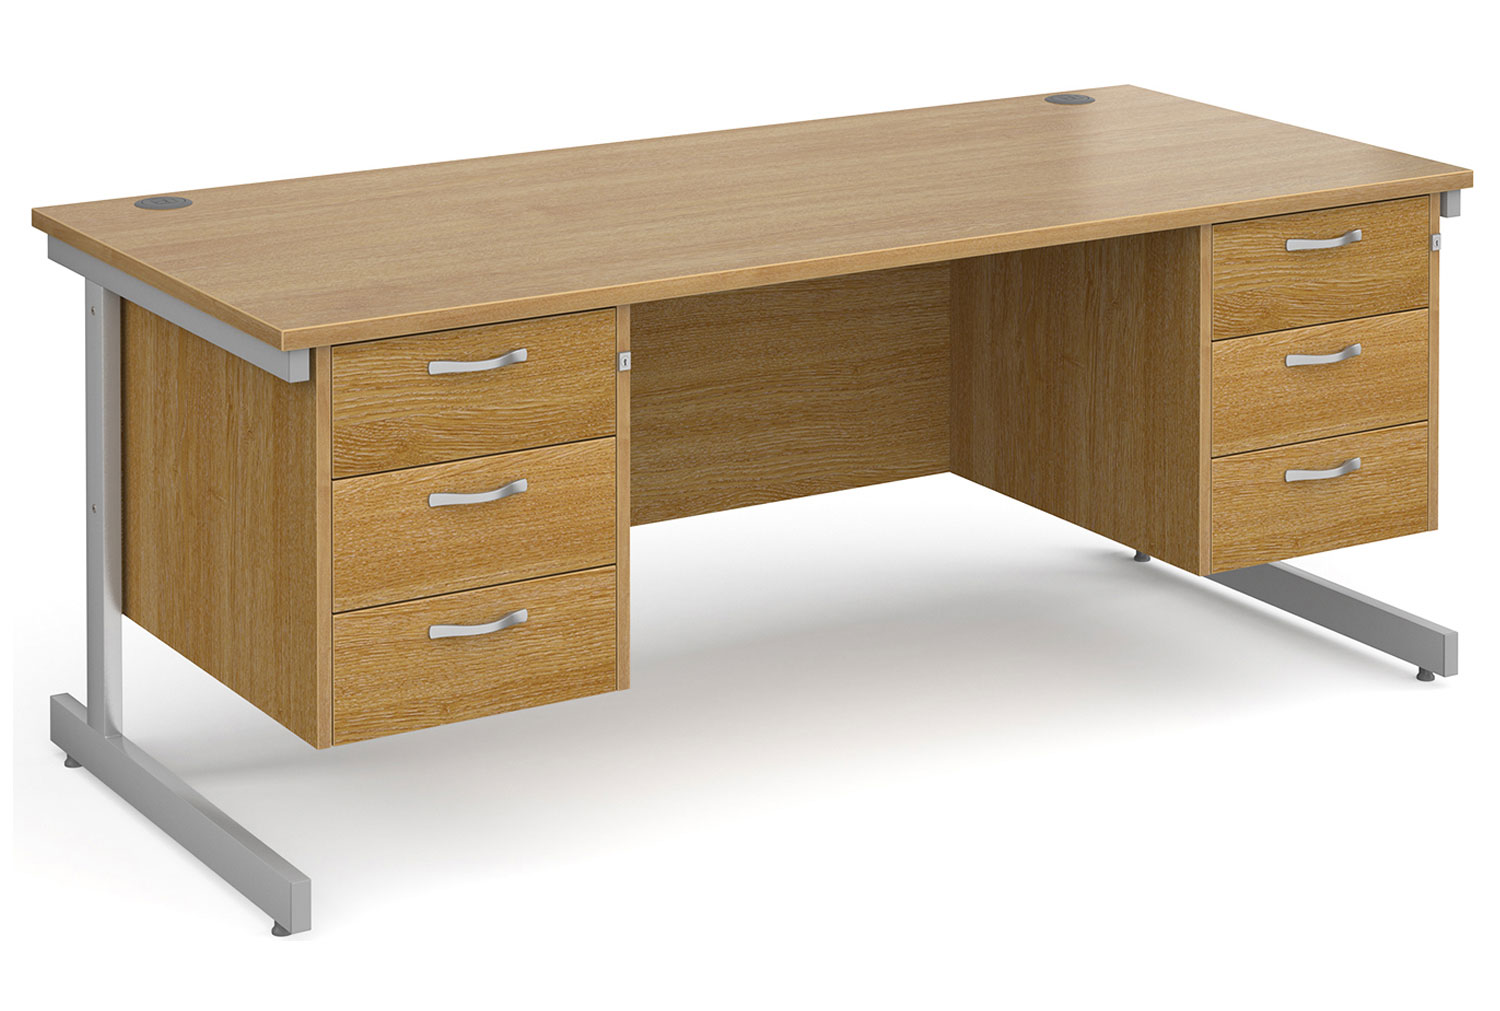 All Oak C-Leg Executive Office Desk 3+3 Drawers, 180wx80dx73h (cm)